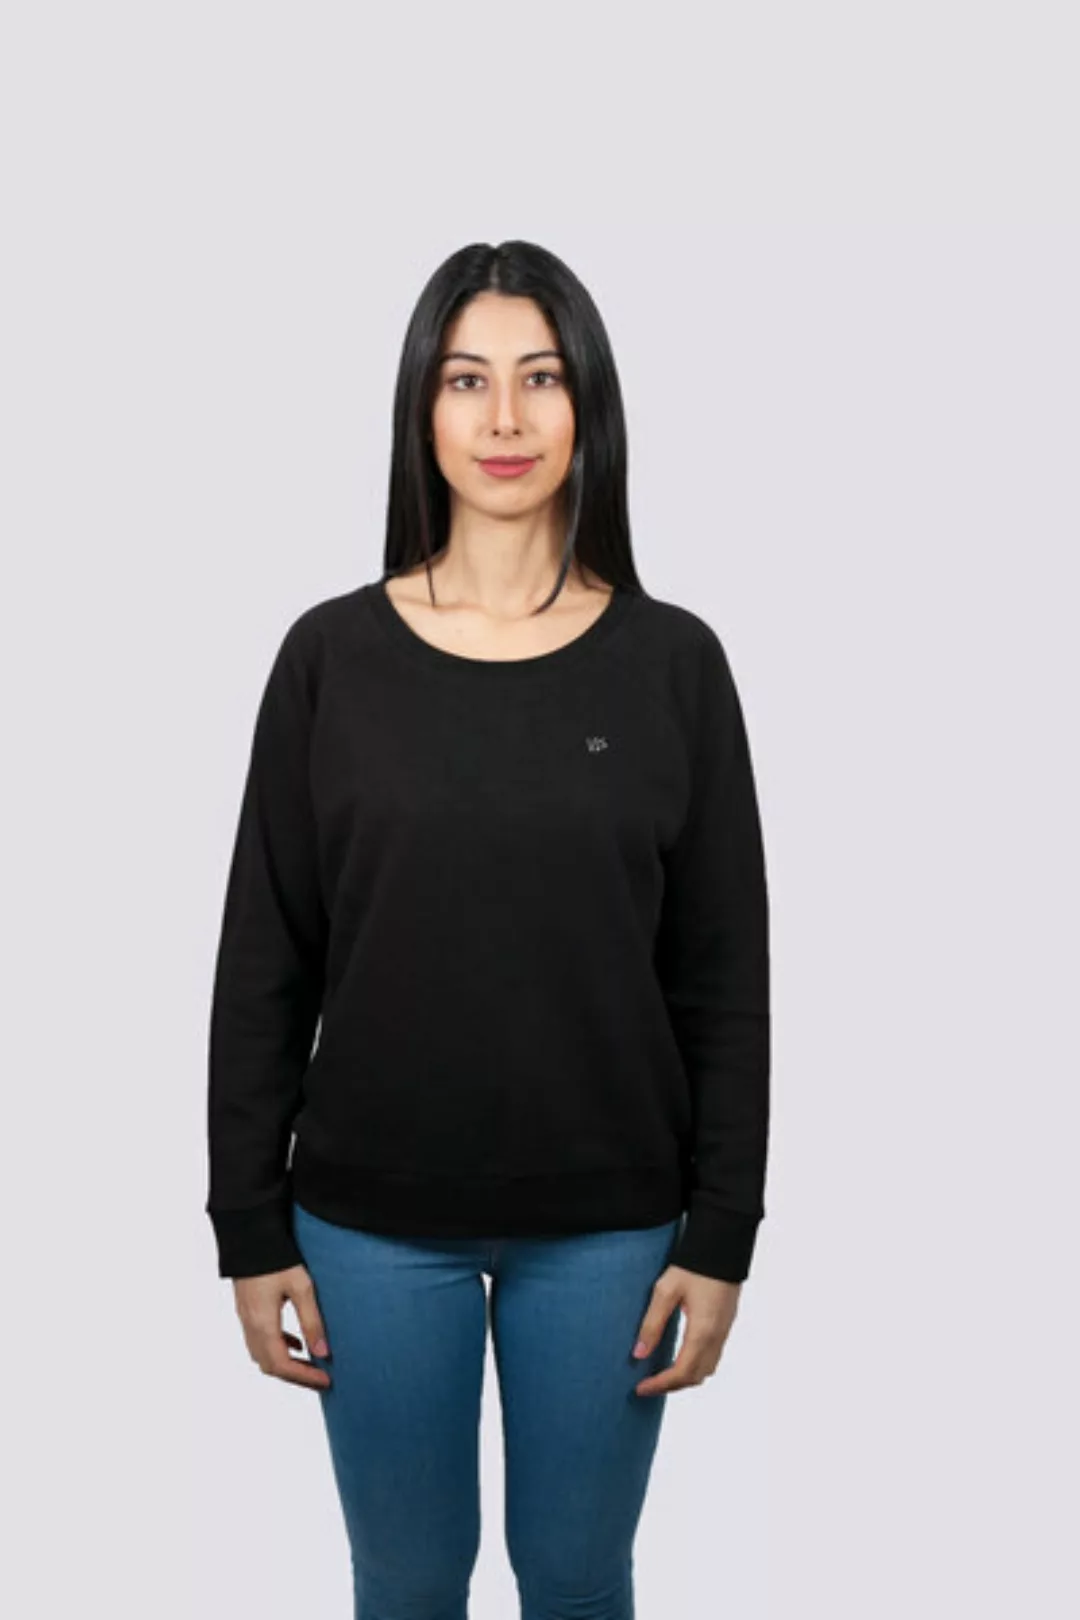 Premium Damen Sweatshirt Aus Bio Baumwolle, Fair, Vegan, Nachhaltig günstig online kaufen